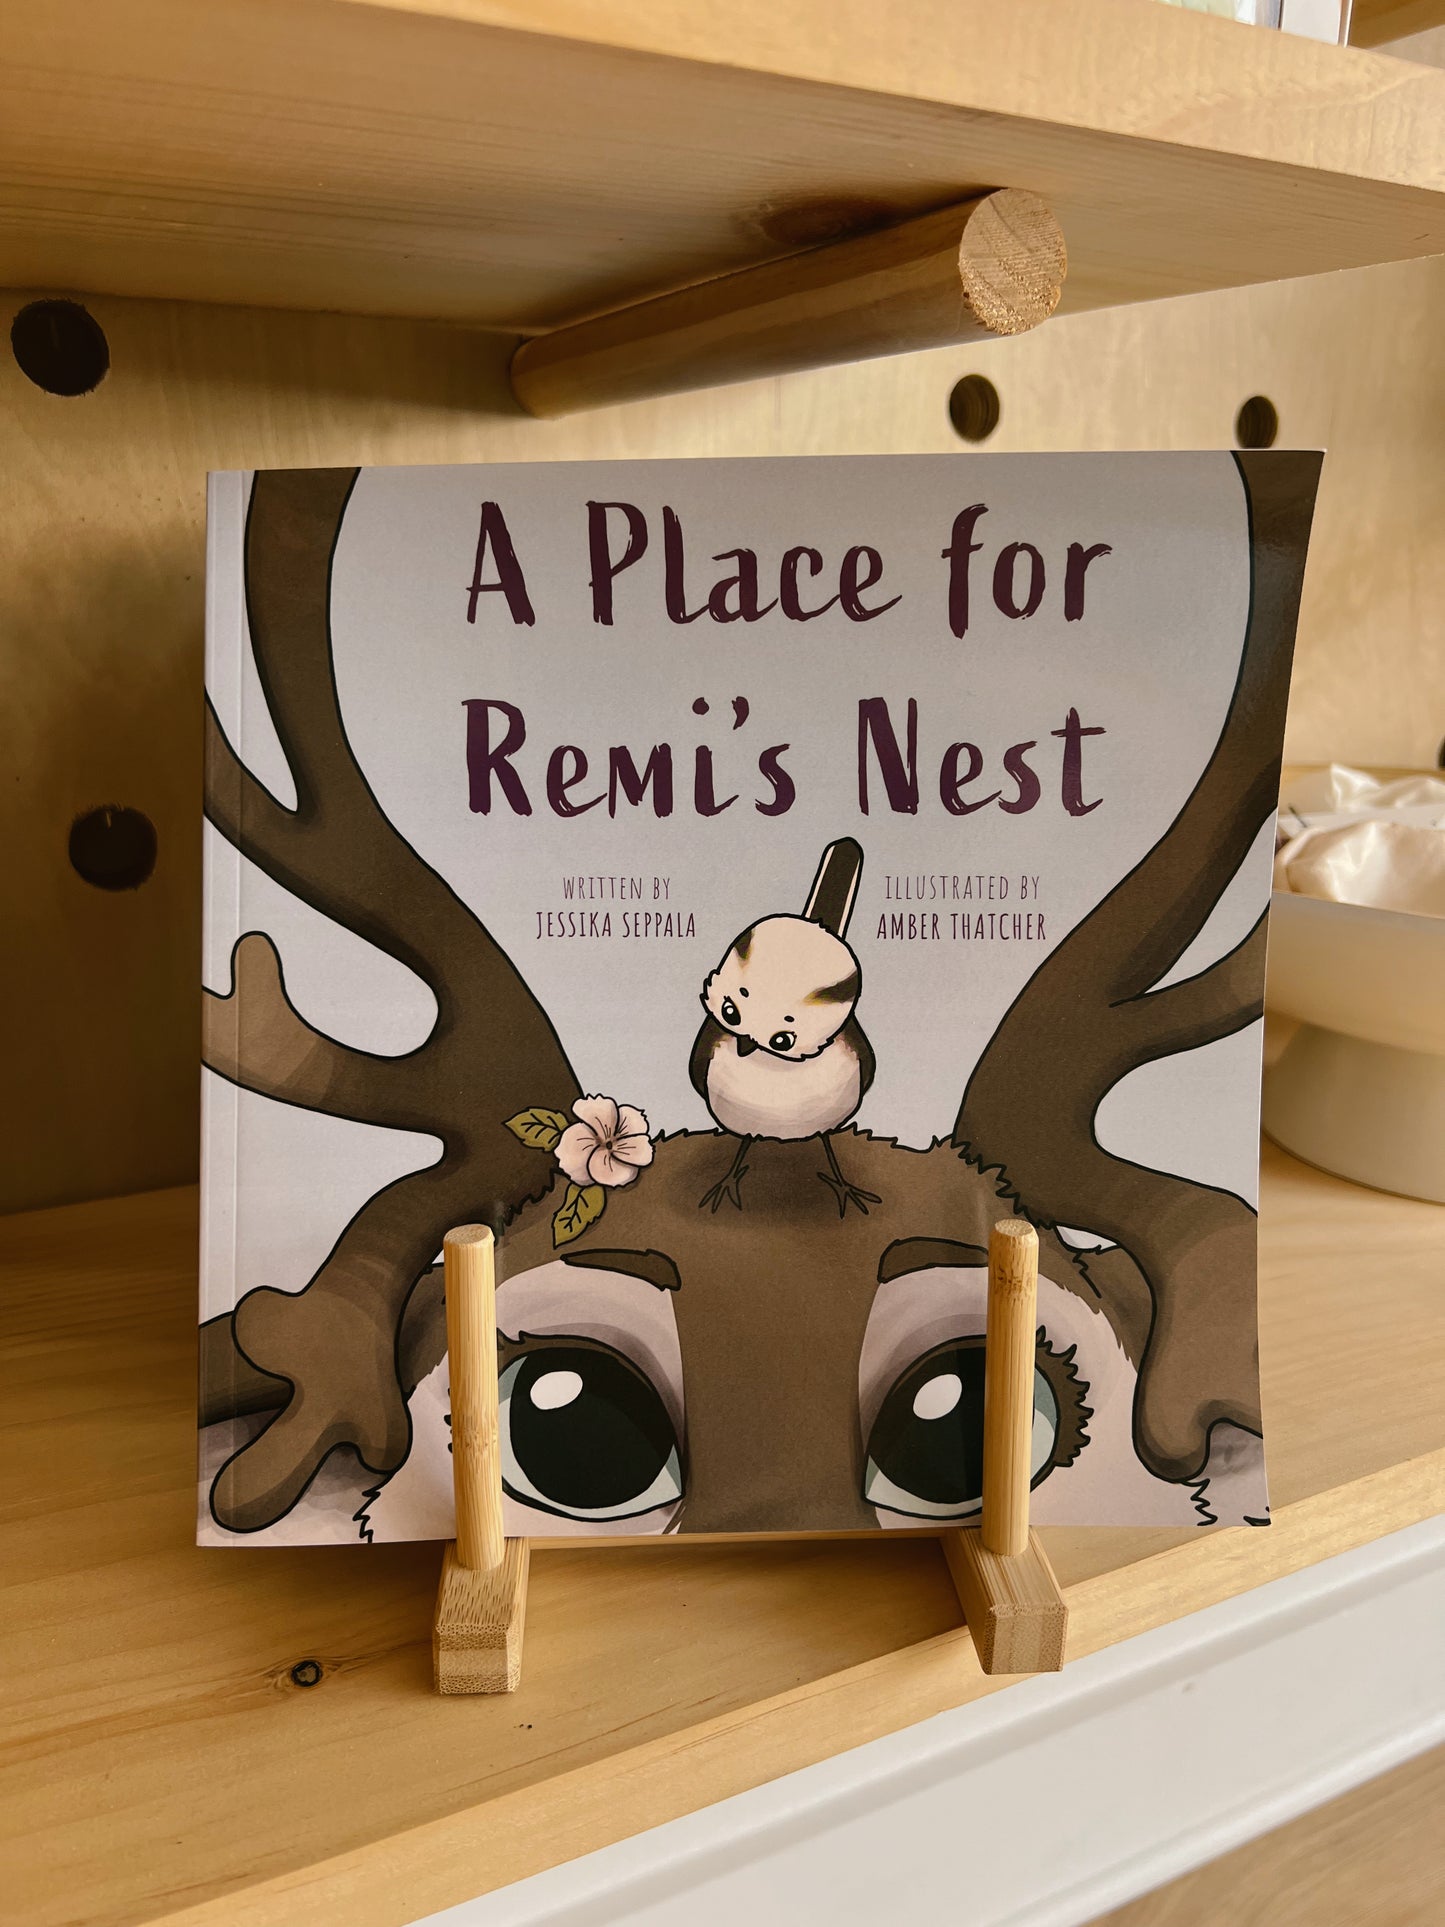 A Place for Remi’s Nest by Jessika Seppala